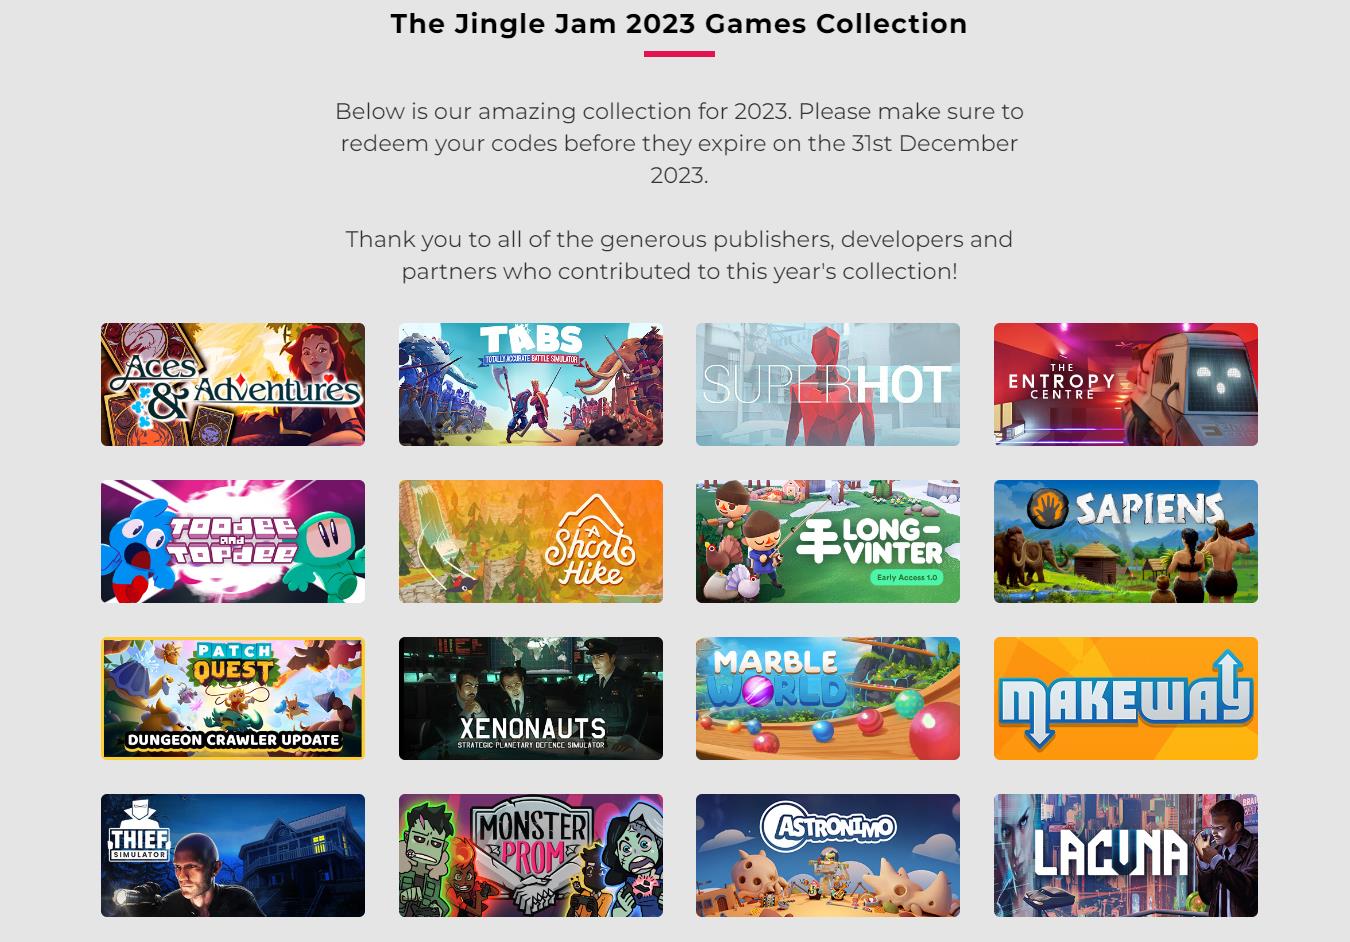 电子游戏筹款行动“Jingle Jam”自2011年以来已经筹集逾越2500万英镑